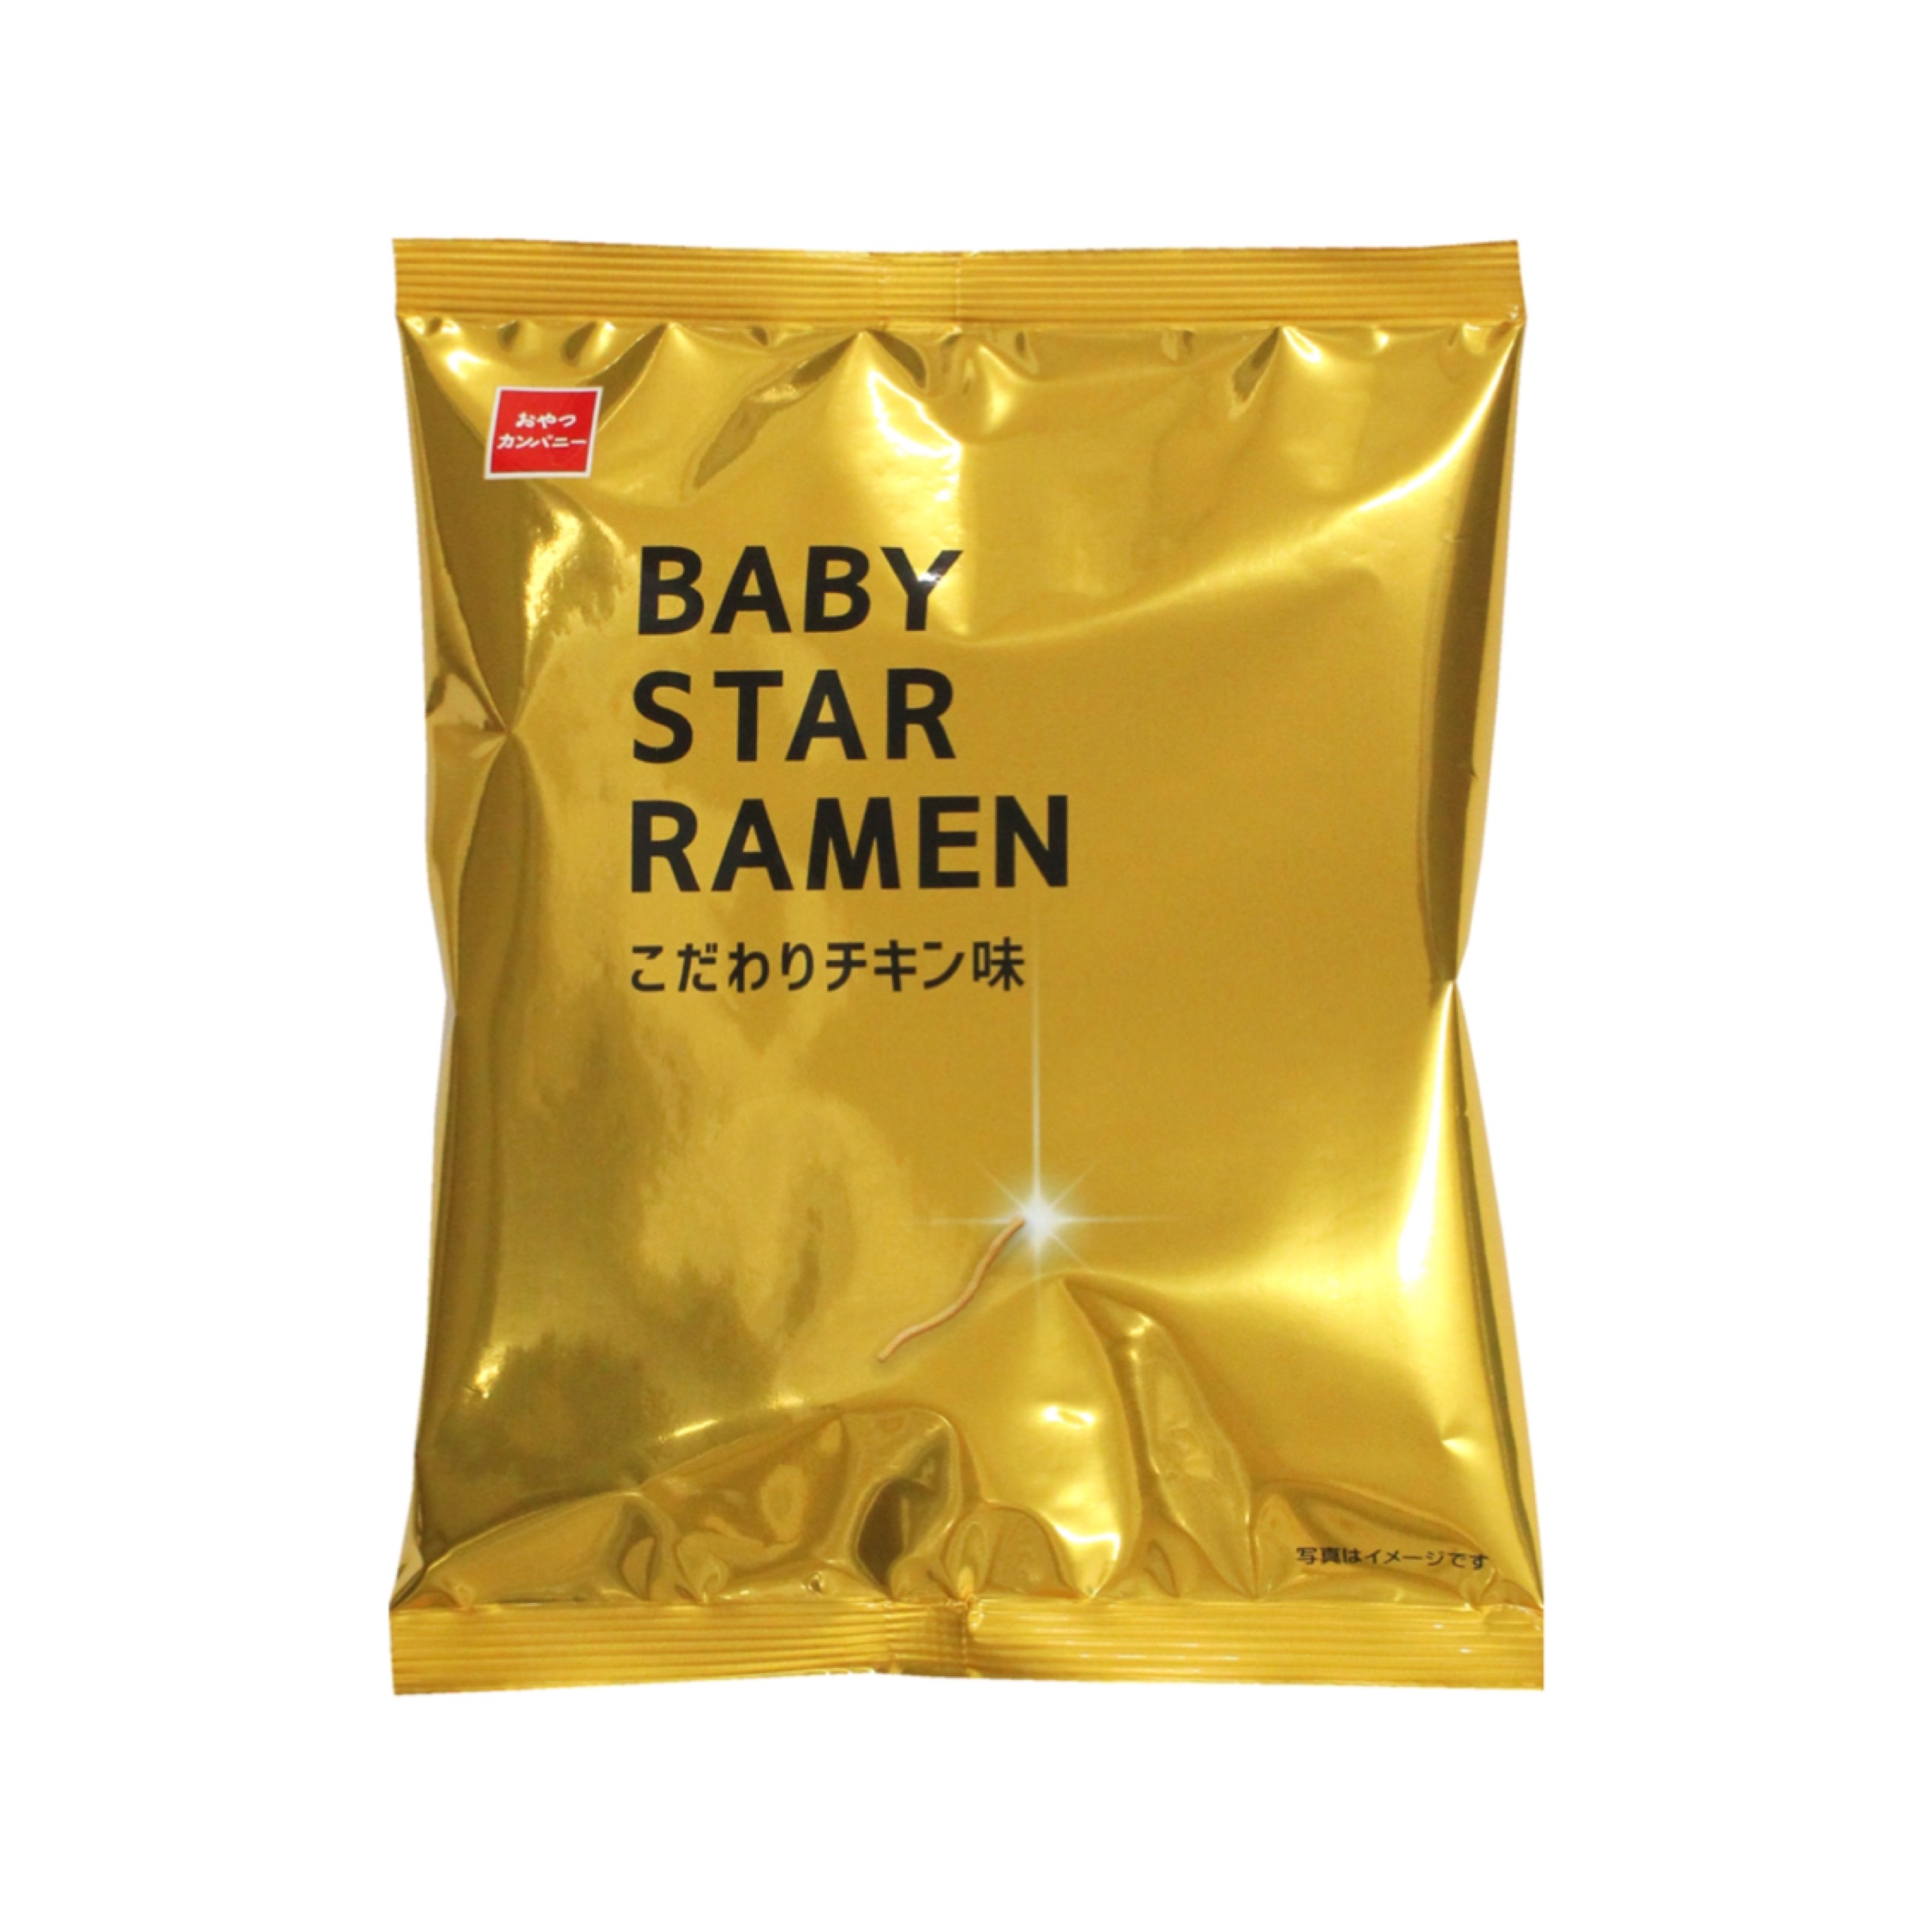 【ベビースター】異彩を放つシンプルな金色パッケージ✨こだわり抜いたベビースター「BABY STAR RAMEN こだわりチキン味」5月15日(月)より発売🐣🍜🧡